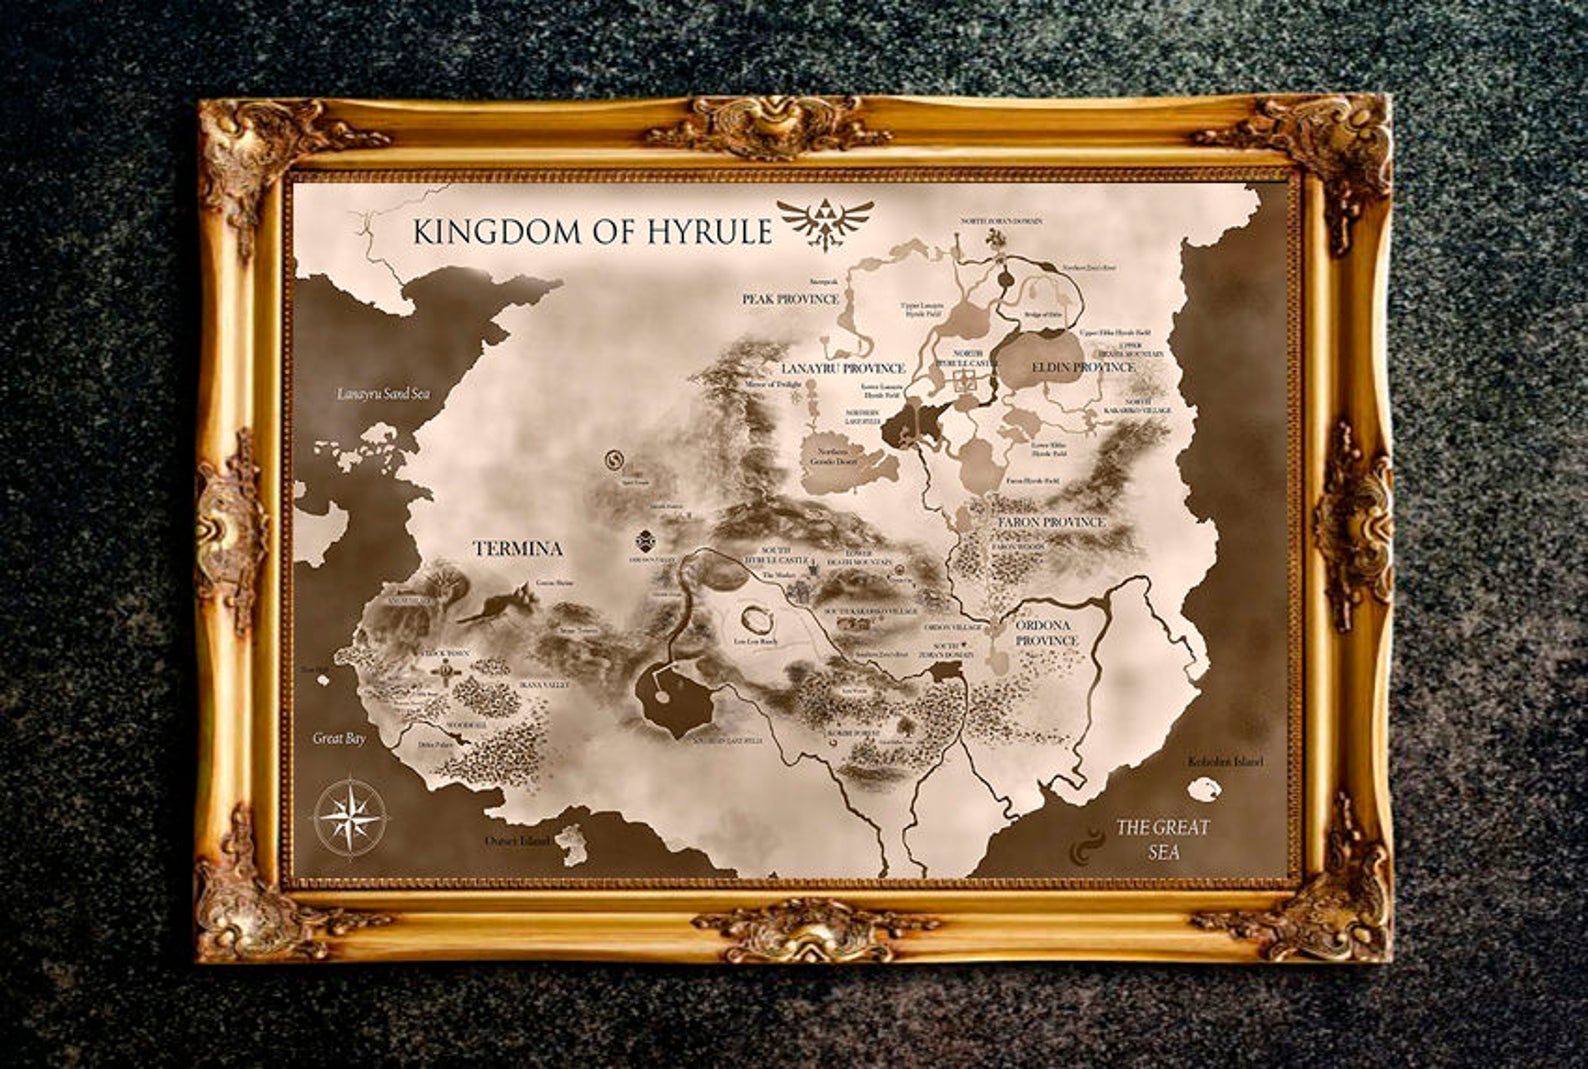 The Legend of Zelda Kingdom of Hyrule Map Legend of Zelda | Etsy